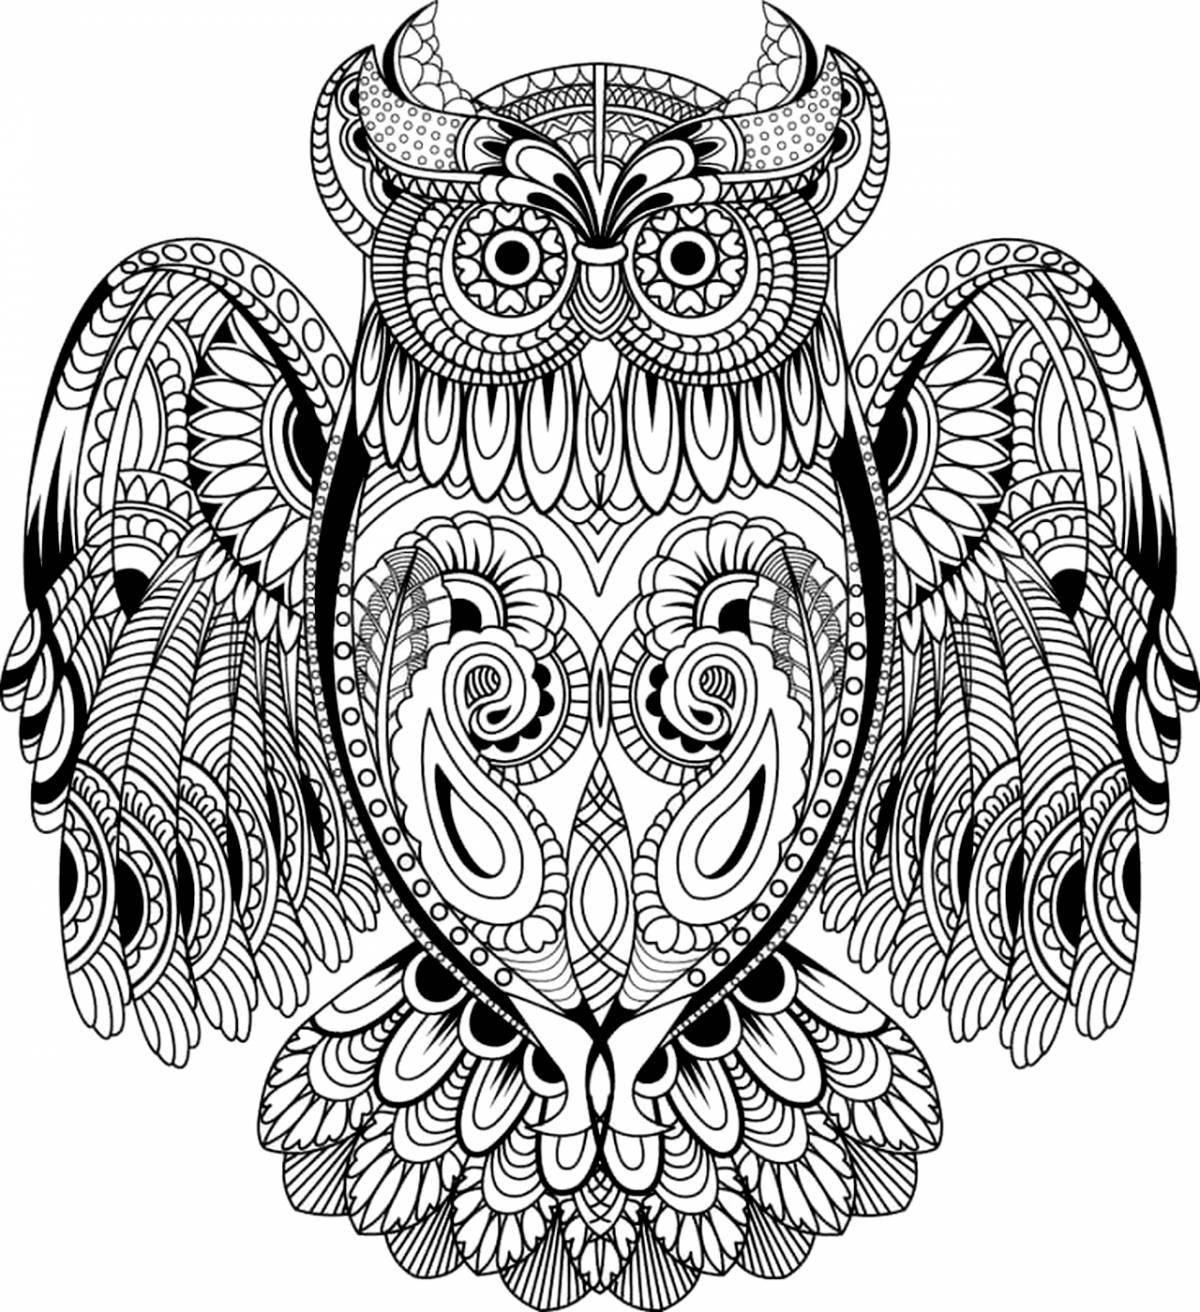 Joyful coloring complex owl